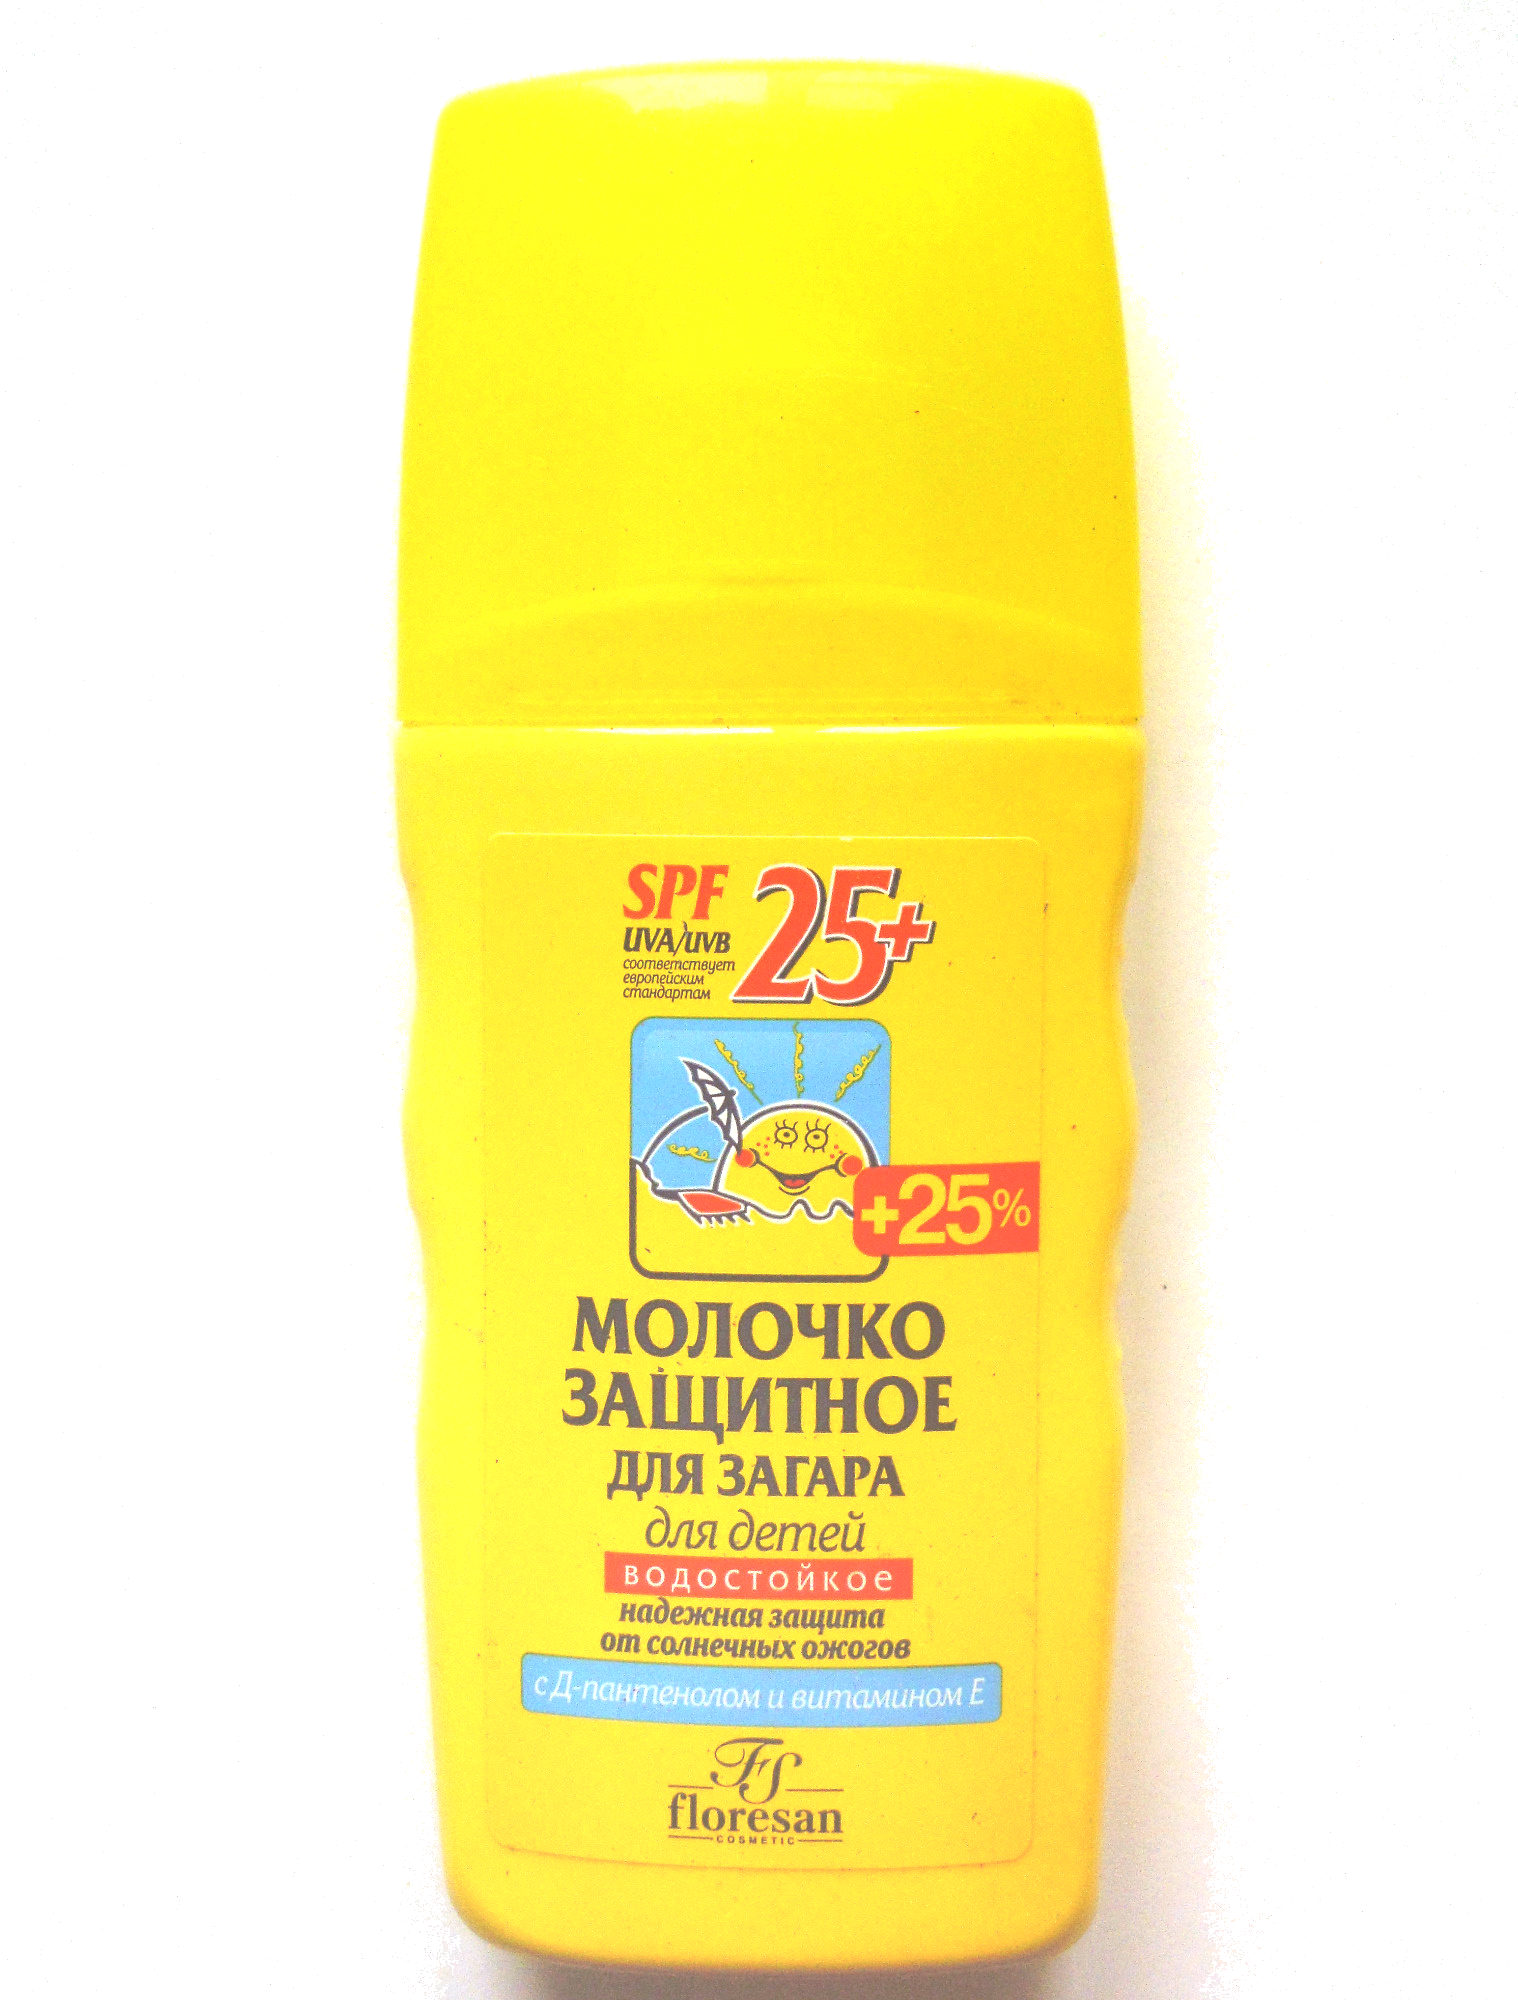 Молочко защитное для загара для детей - Продукт - ru